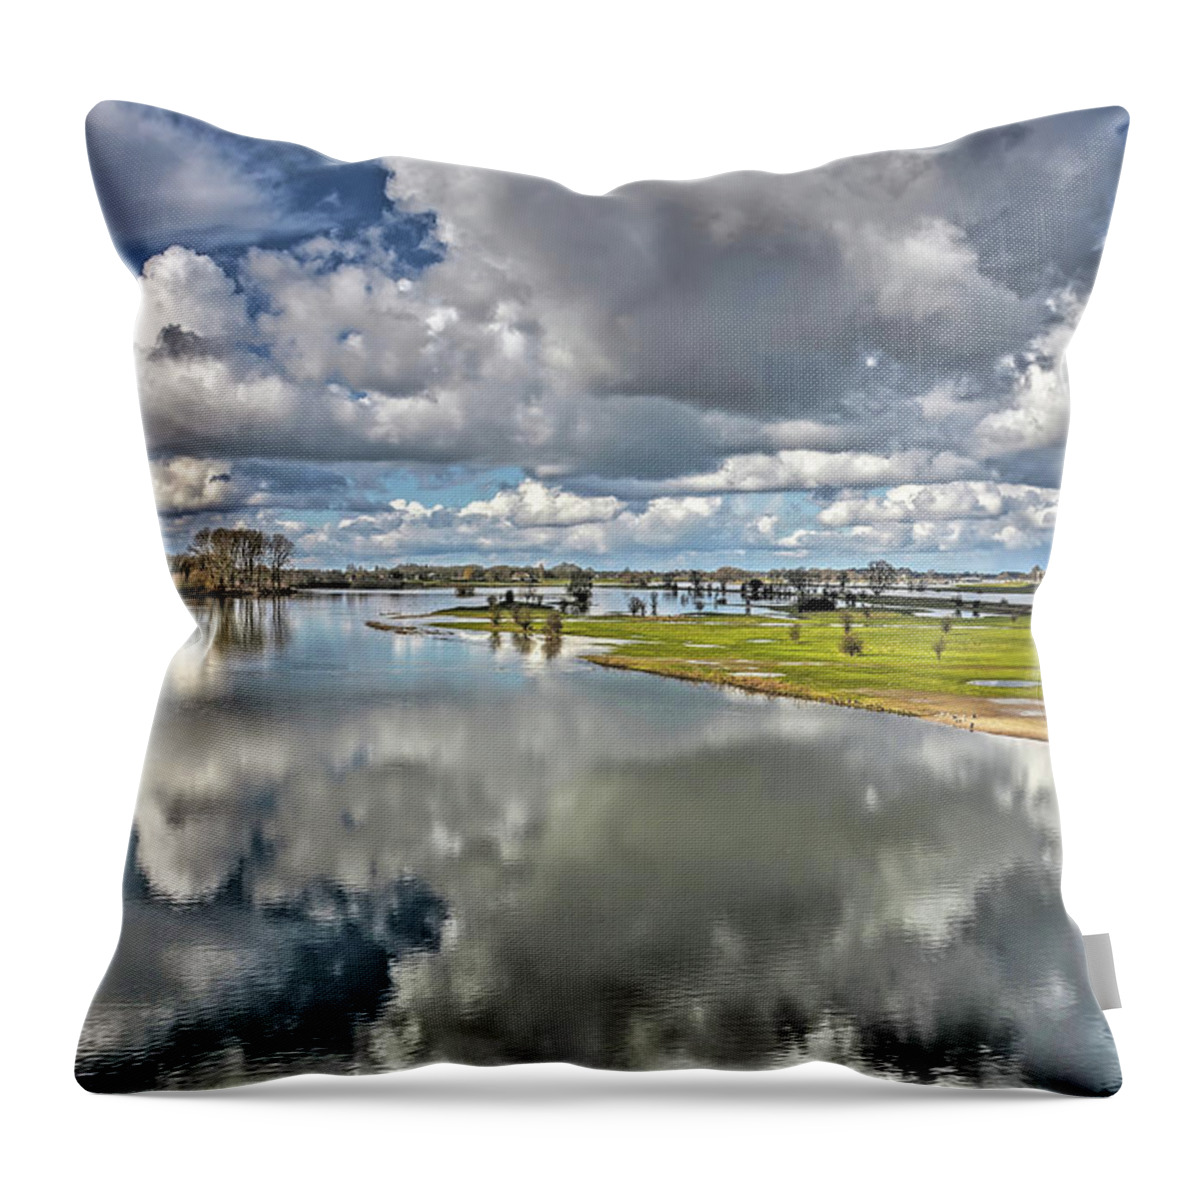 Deventer Throw Pillow featuring the photograph Flooded plains near Deventer by Frans Blok